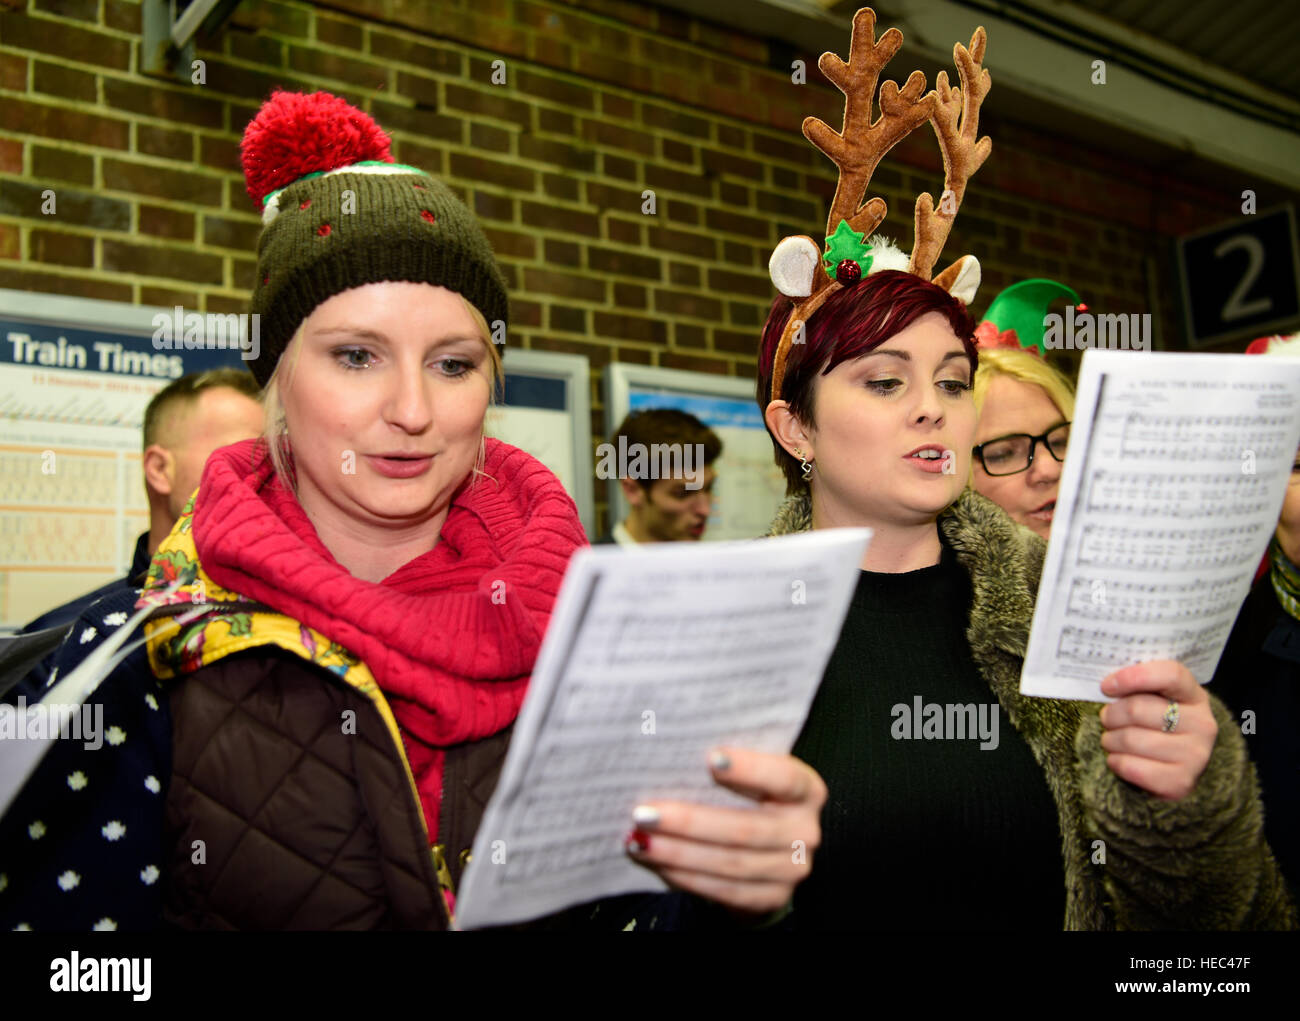 Marie Curie Cancer Charity Freiwilligen singen Weihnachtslieder in einem Zug station Plattform, Farnham, Surrey, UK. Stockfoto